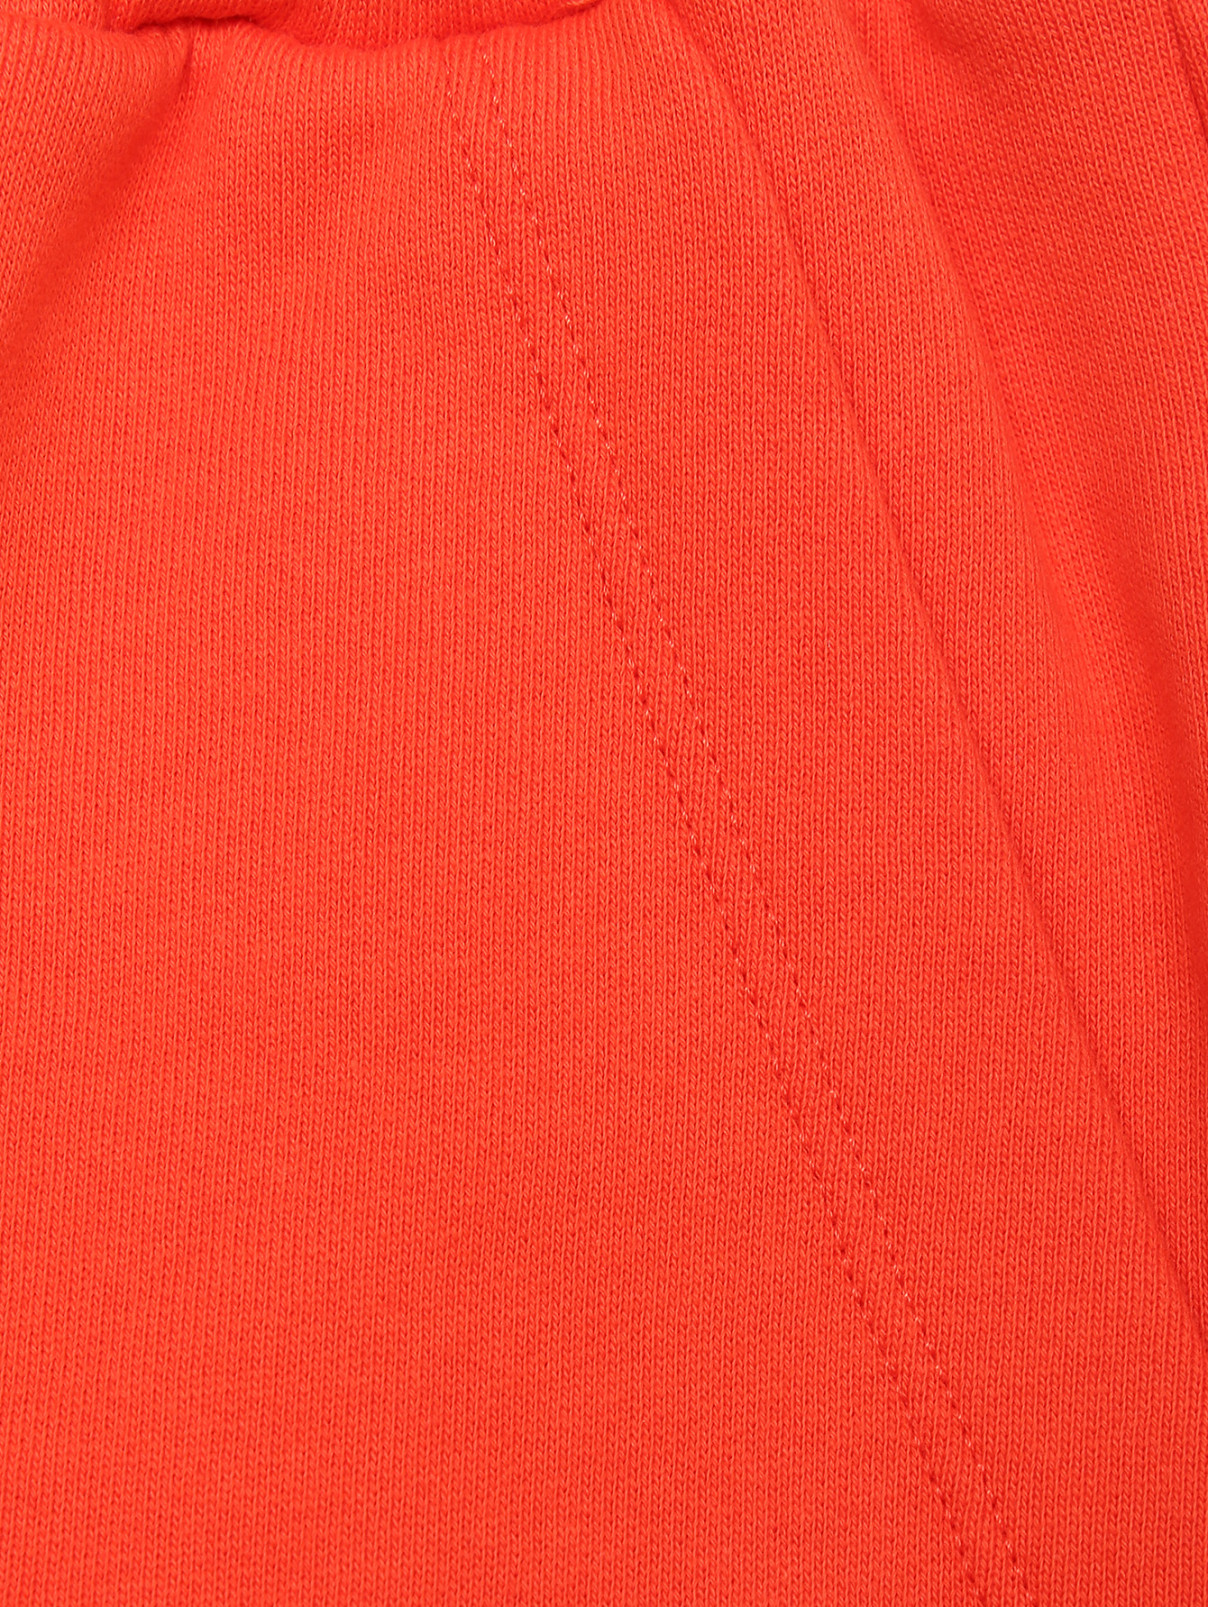 Брюки из хлопка на резинке с карманами Ermanno Firenze  –  Деталь  – Цвет:  Оранжевый